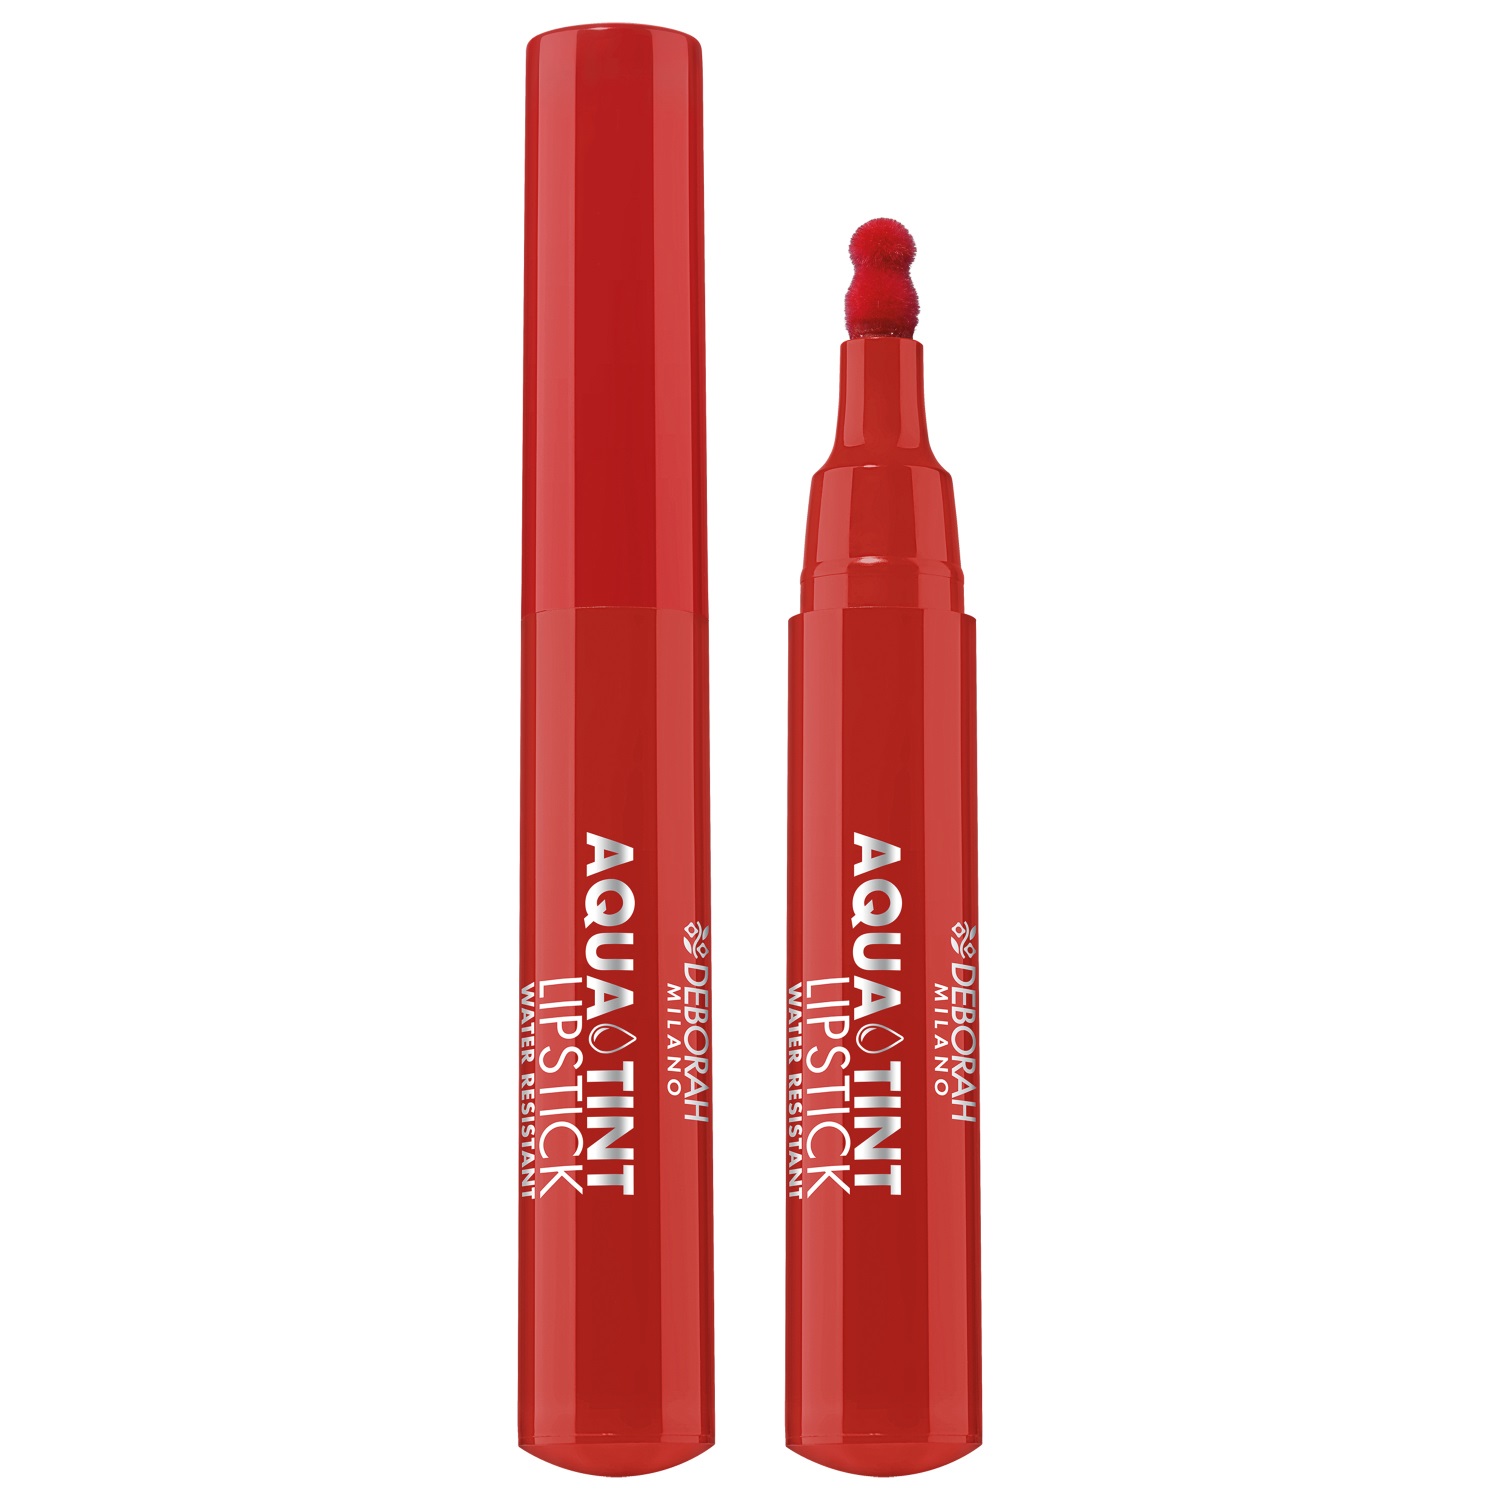 Тинт для губ Deborah Milano Aqua Tint Lipstick 2.5 г 2 шт deborah milano тинт для губ aqua tint lipstick